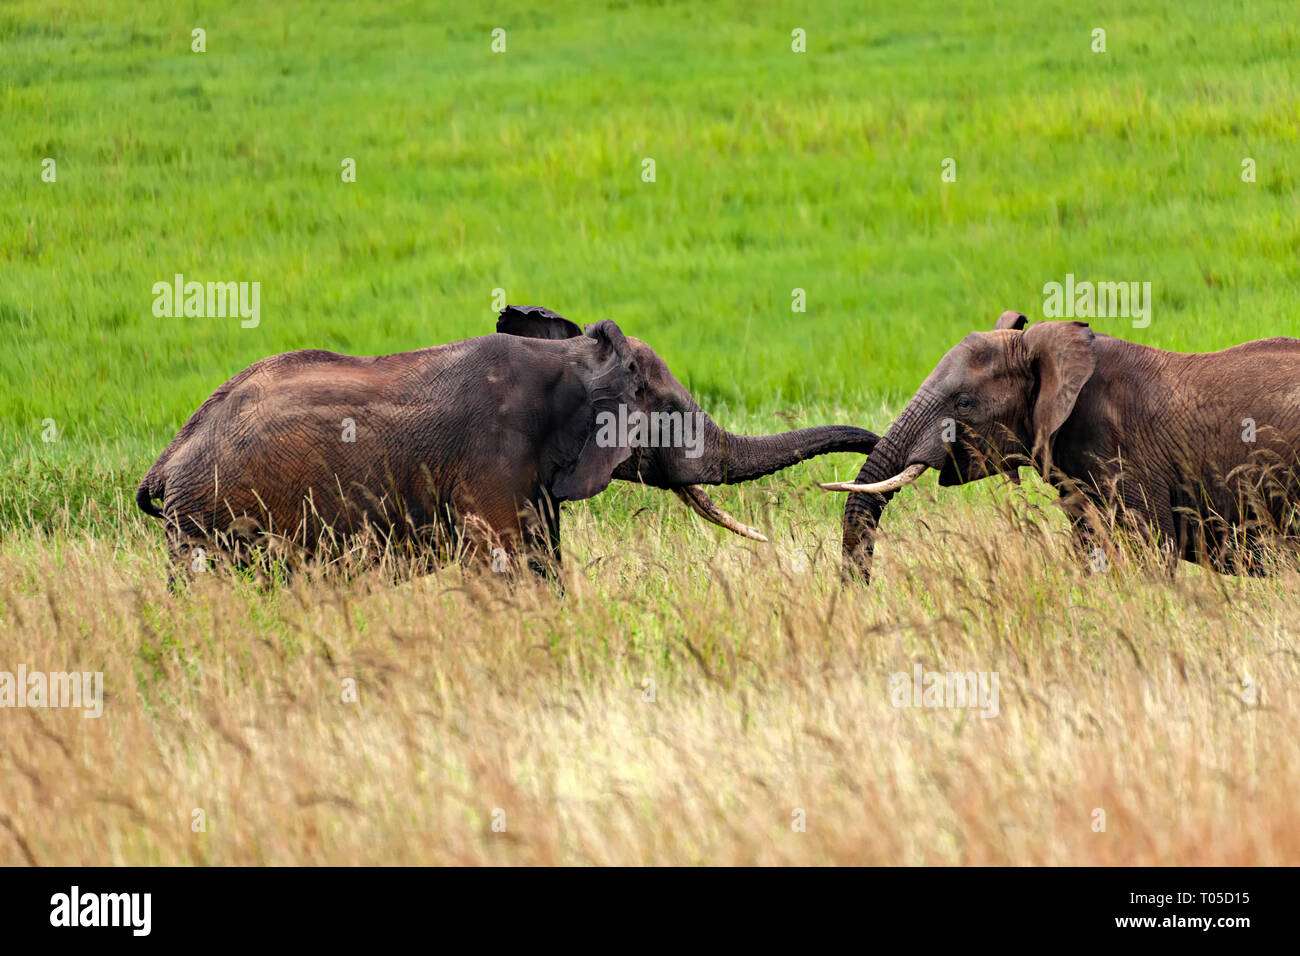 Elephants Fighting Stock Photo